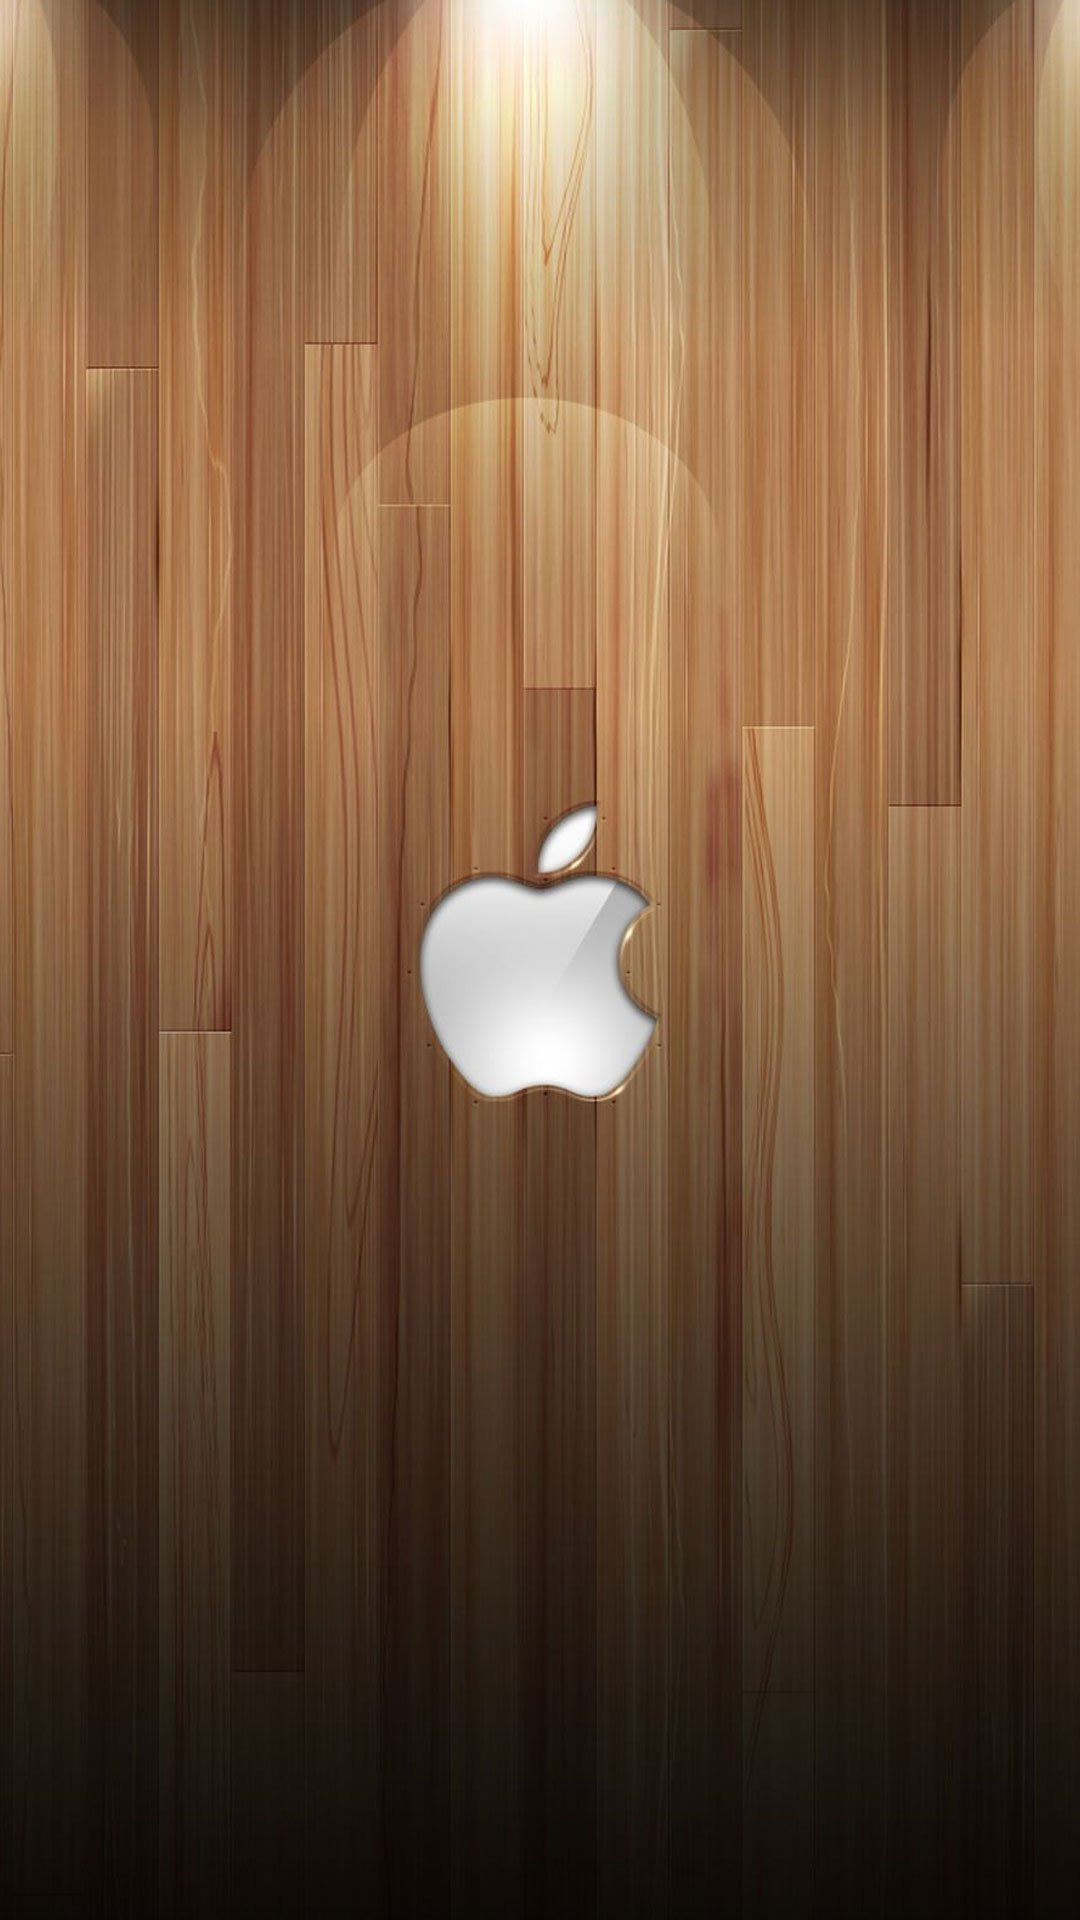 ディズニー画像ランド ラブリーiphone6s 壁紙 Apple